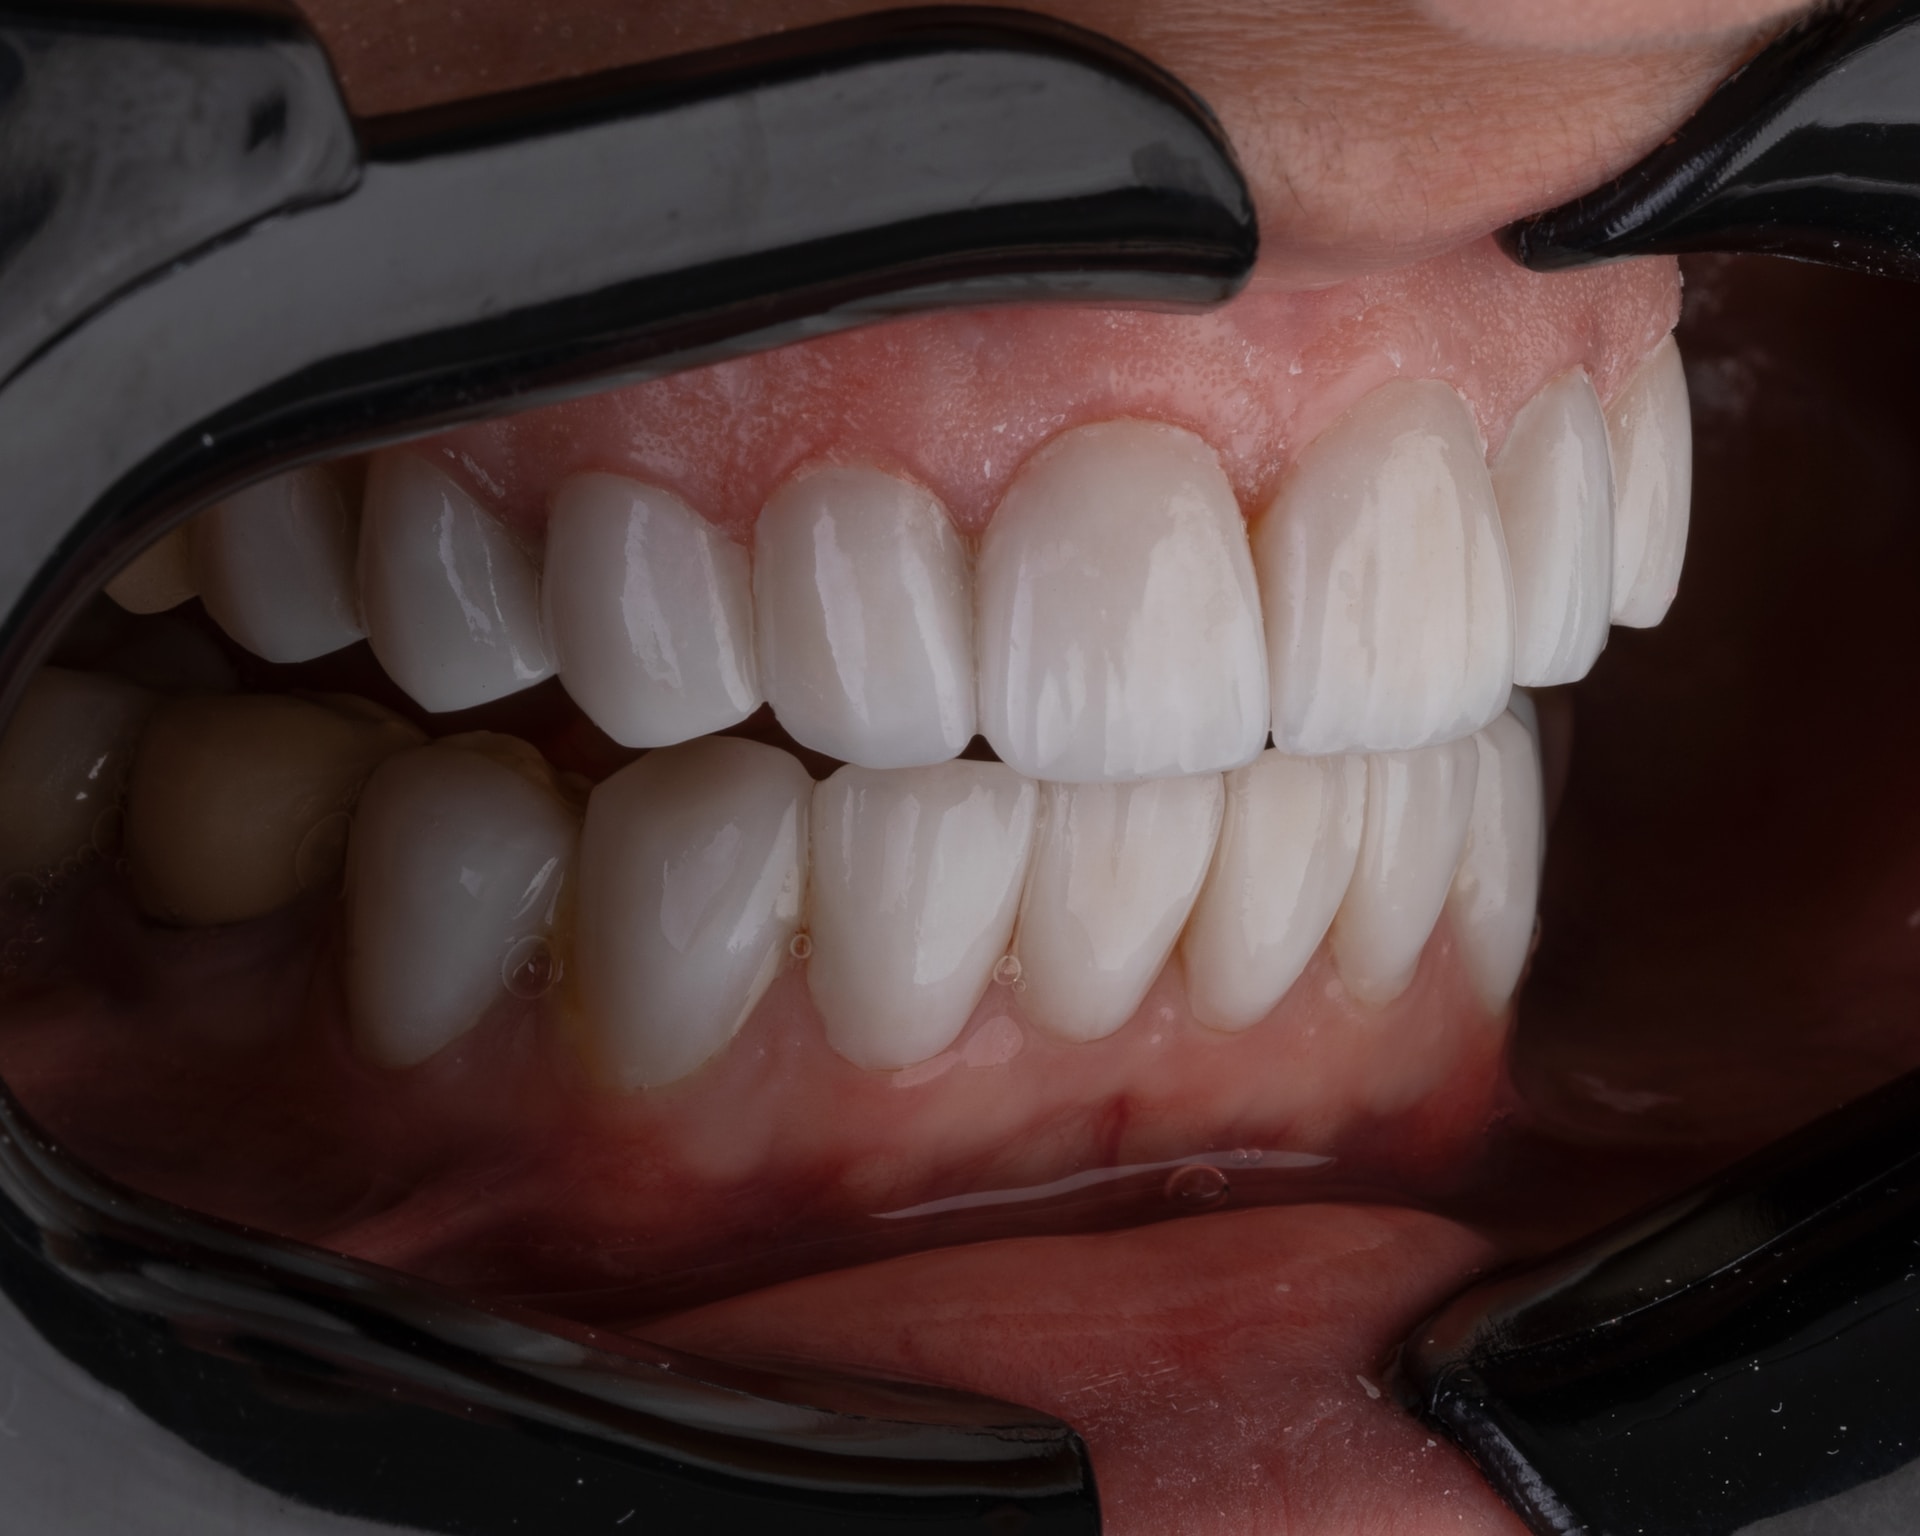 Rehabilitacja stomatologiczna – kiedy warto ją rozważyć?